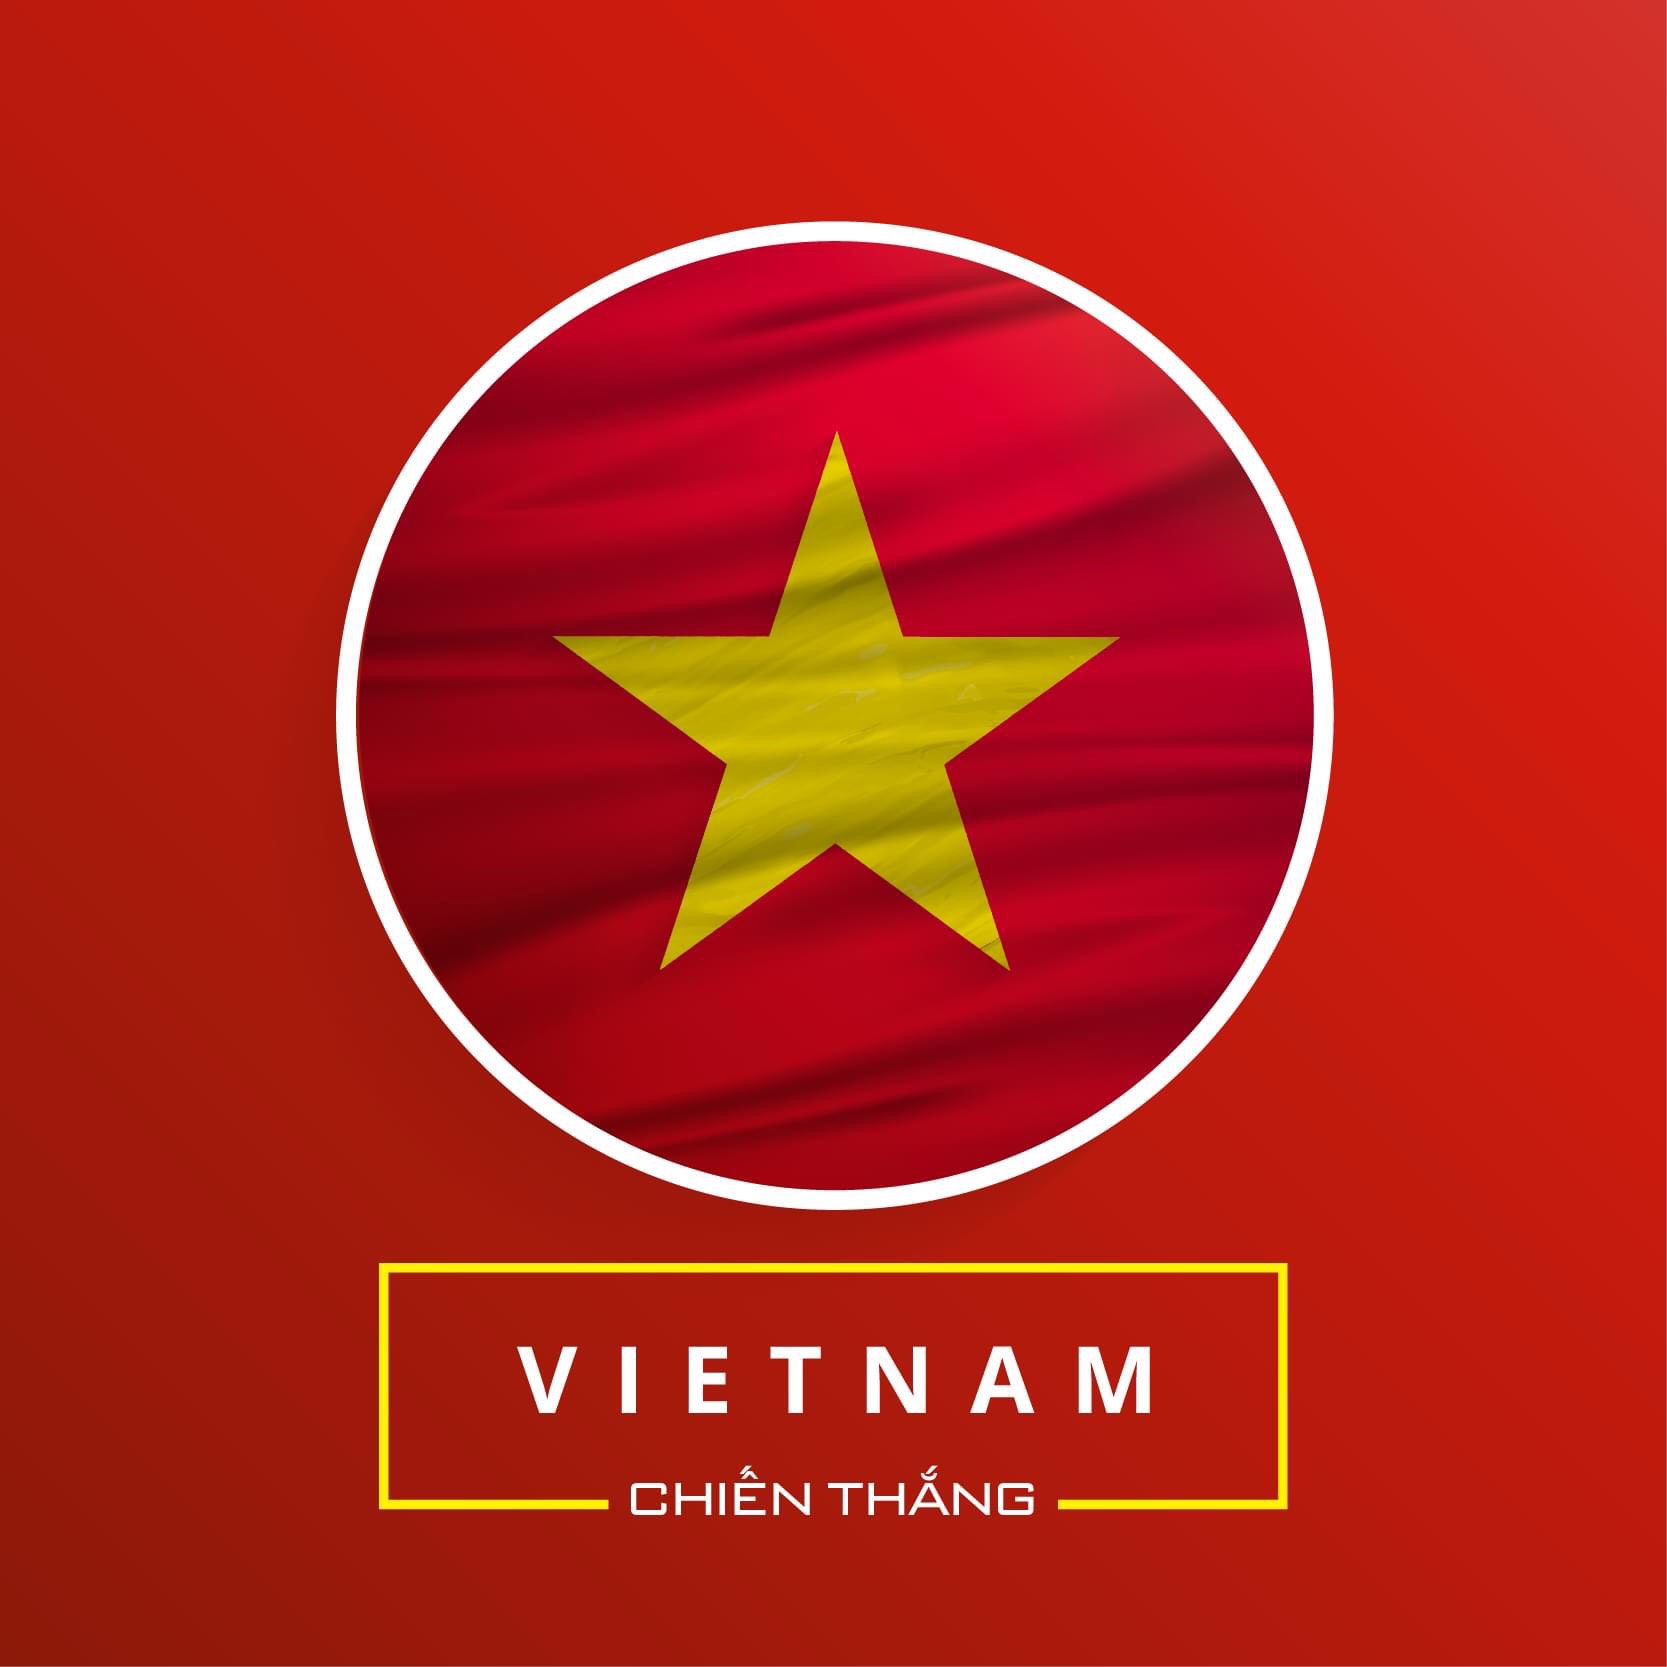 63 Hình Ảnh Avatar Việt Nam Đẹp Vô Địch KHÔNG ĐỐI THỦ